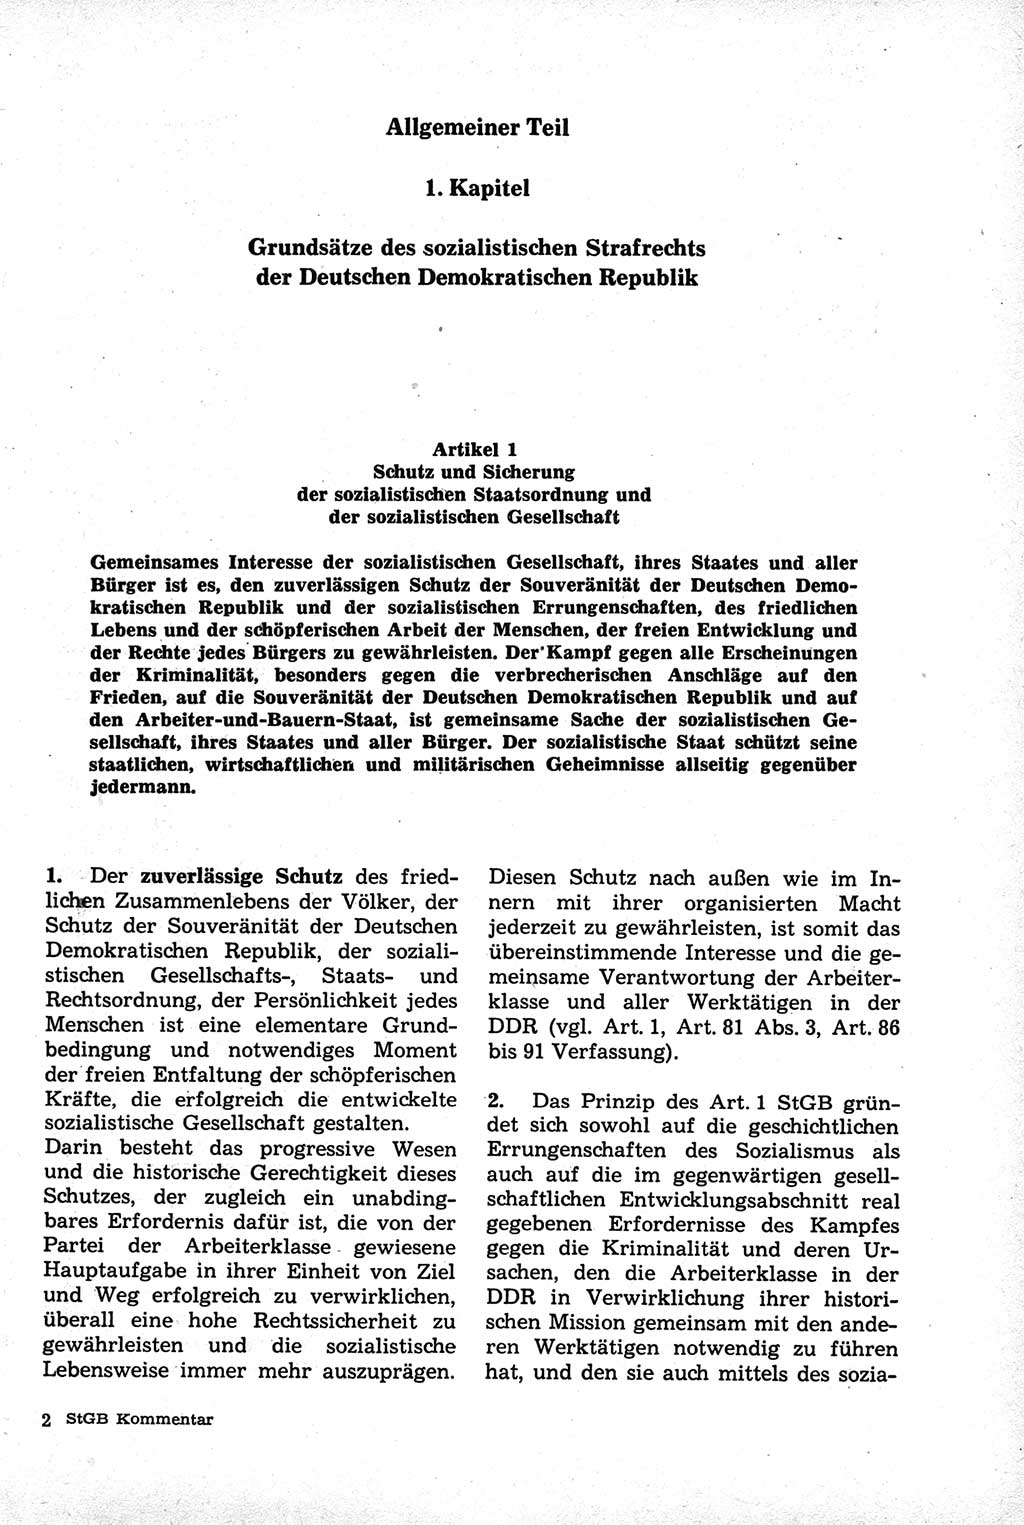 Strafrecht der Deutschen Demokratischen Republik (DDR), Kommentar zum Strafgesetzbuch (StGB) 1981, Seite 17 (Strafr. DDR Komm. StGB 1981, S. 17)